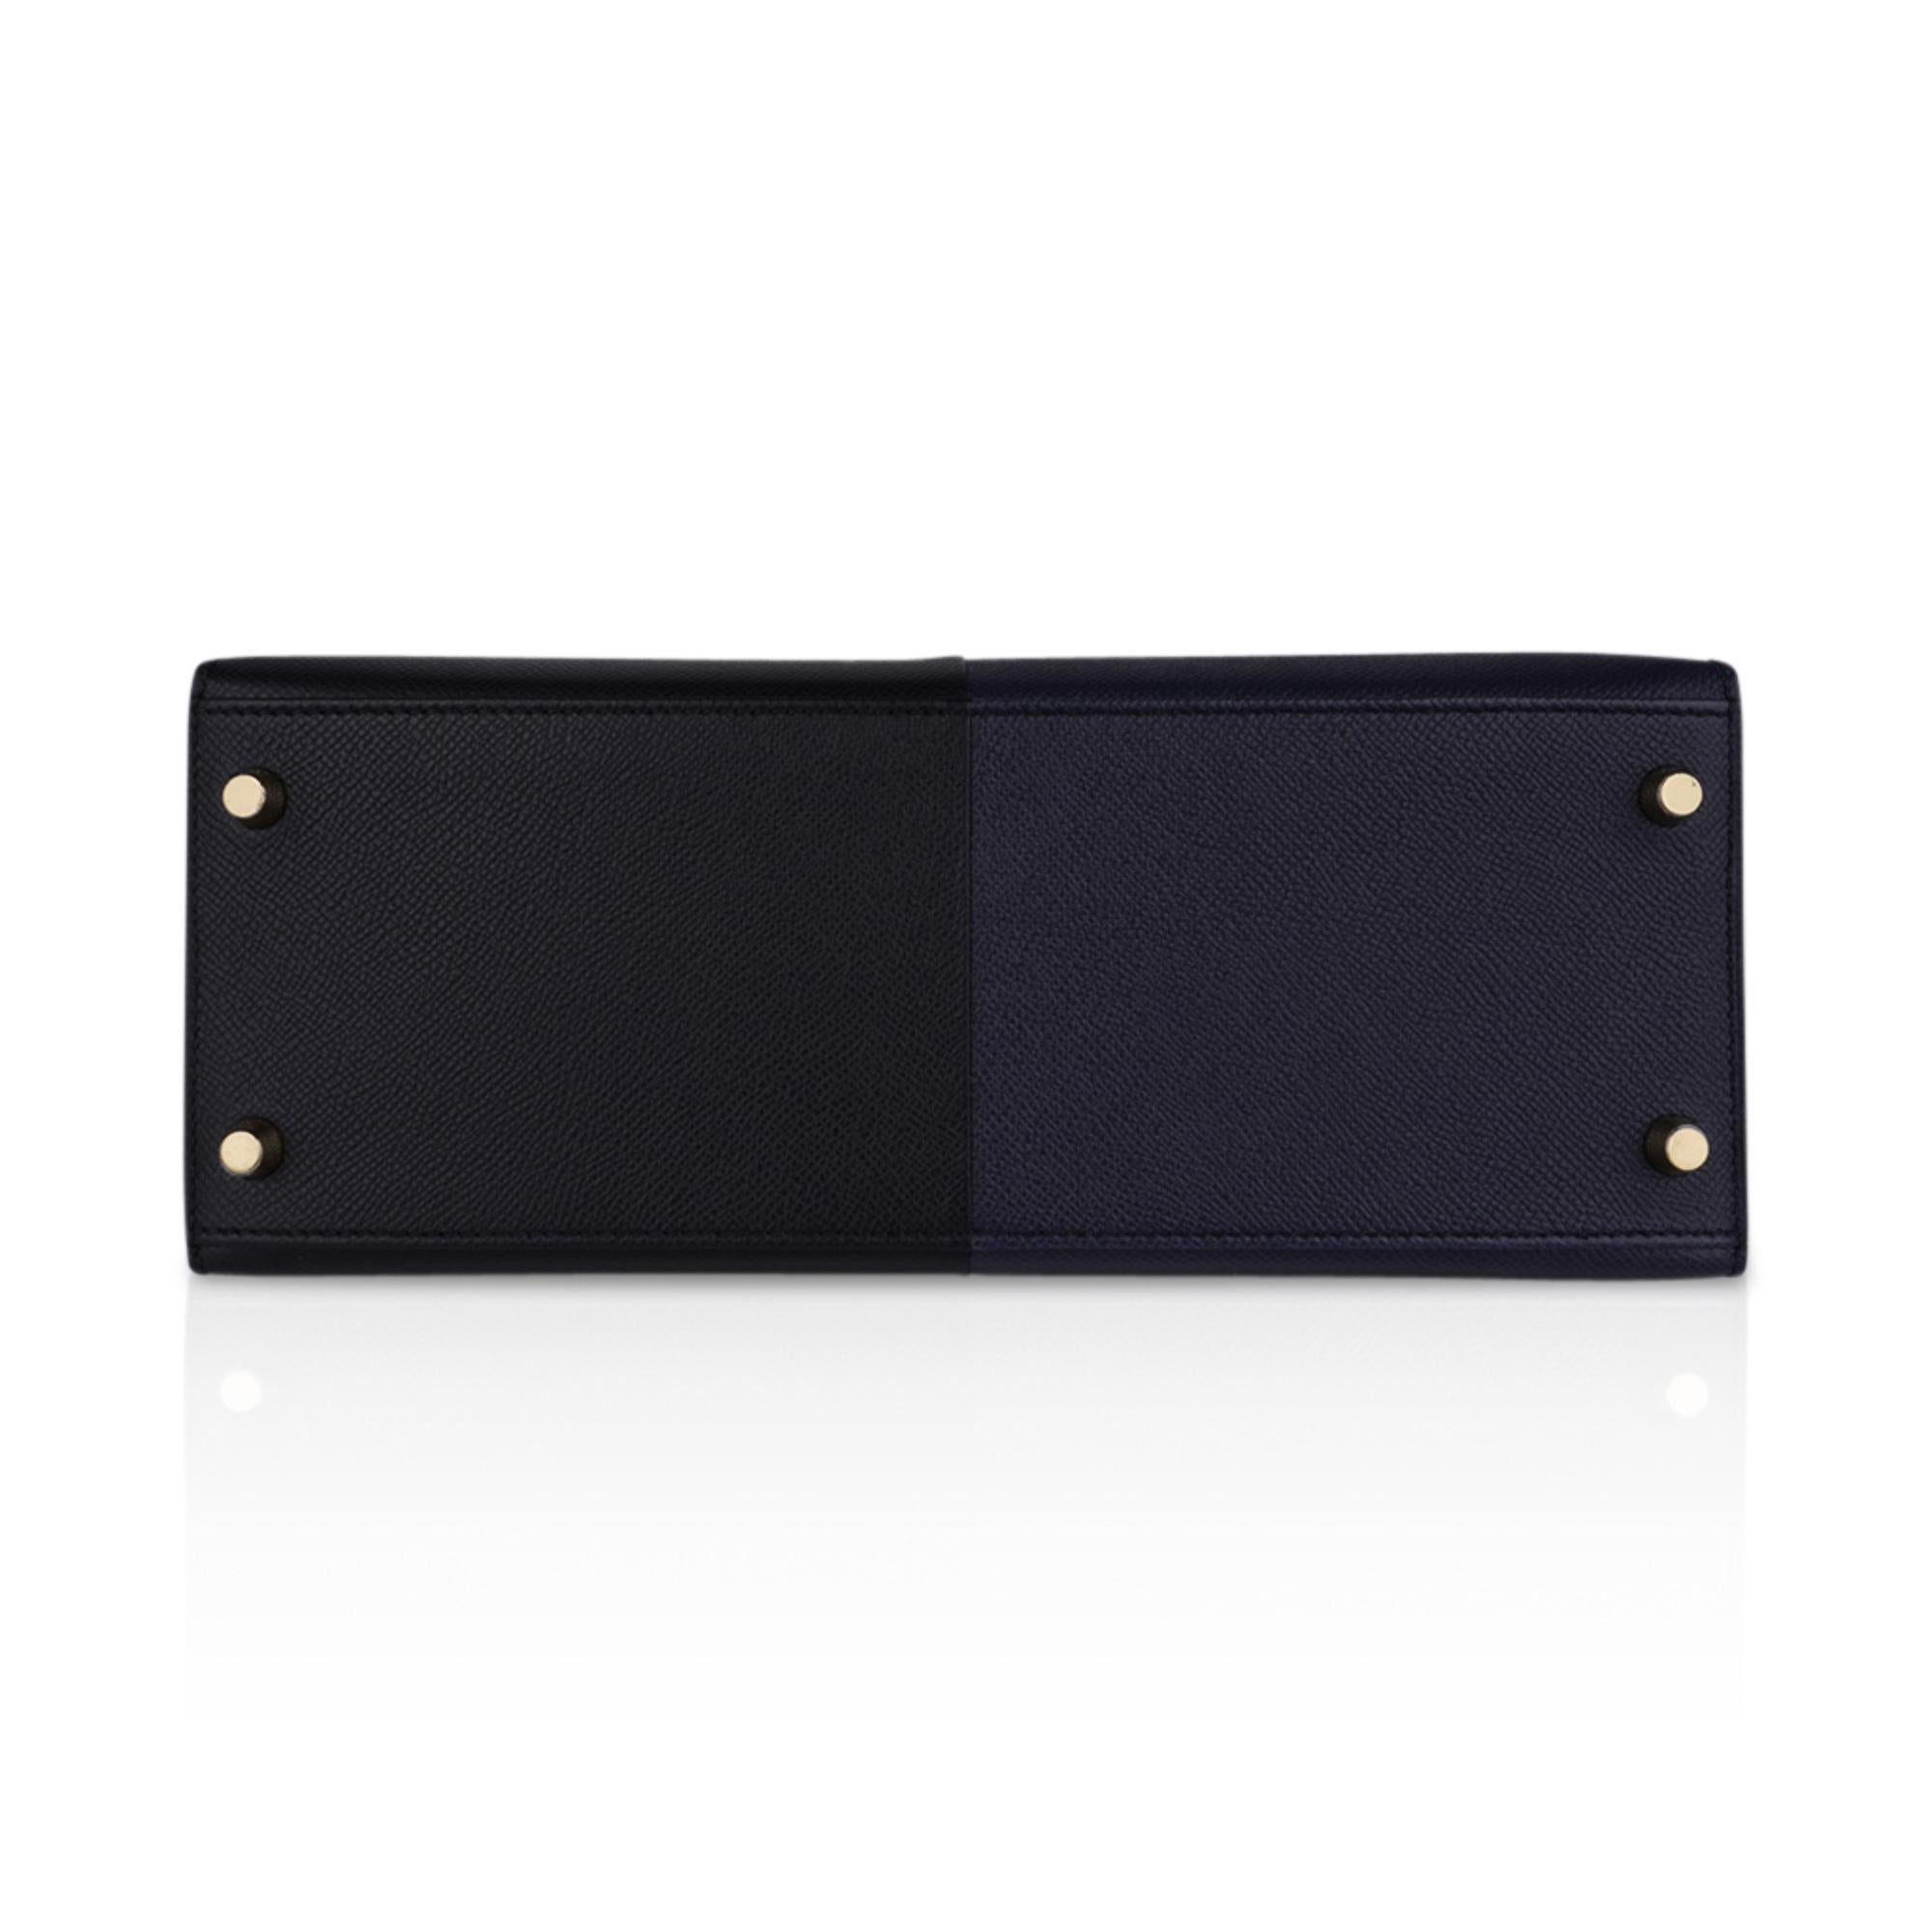 Hermes Kelly Casaque 28 Bag Black / Bleu Indigo Sellier Limited Edition 9